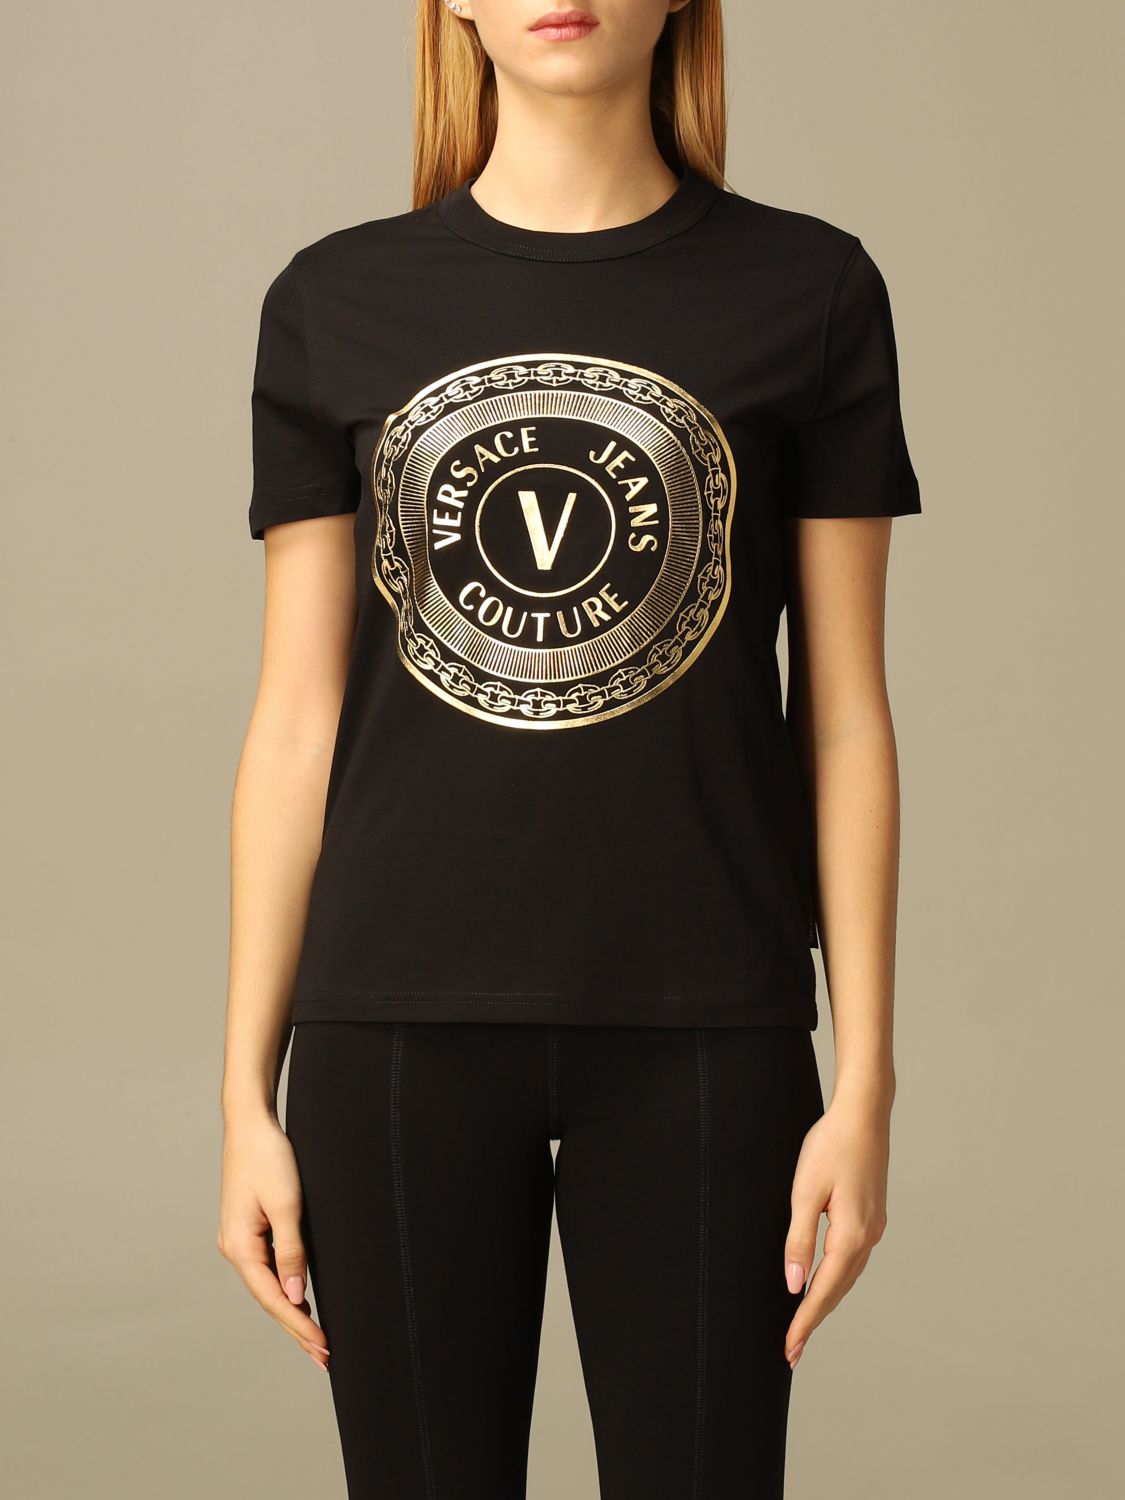 versace jeans womens t shirt